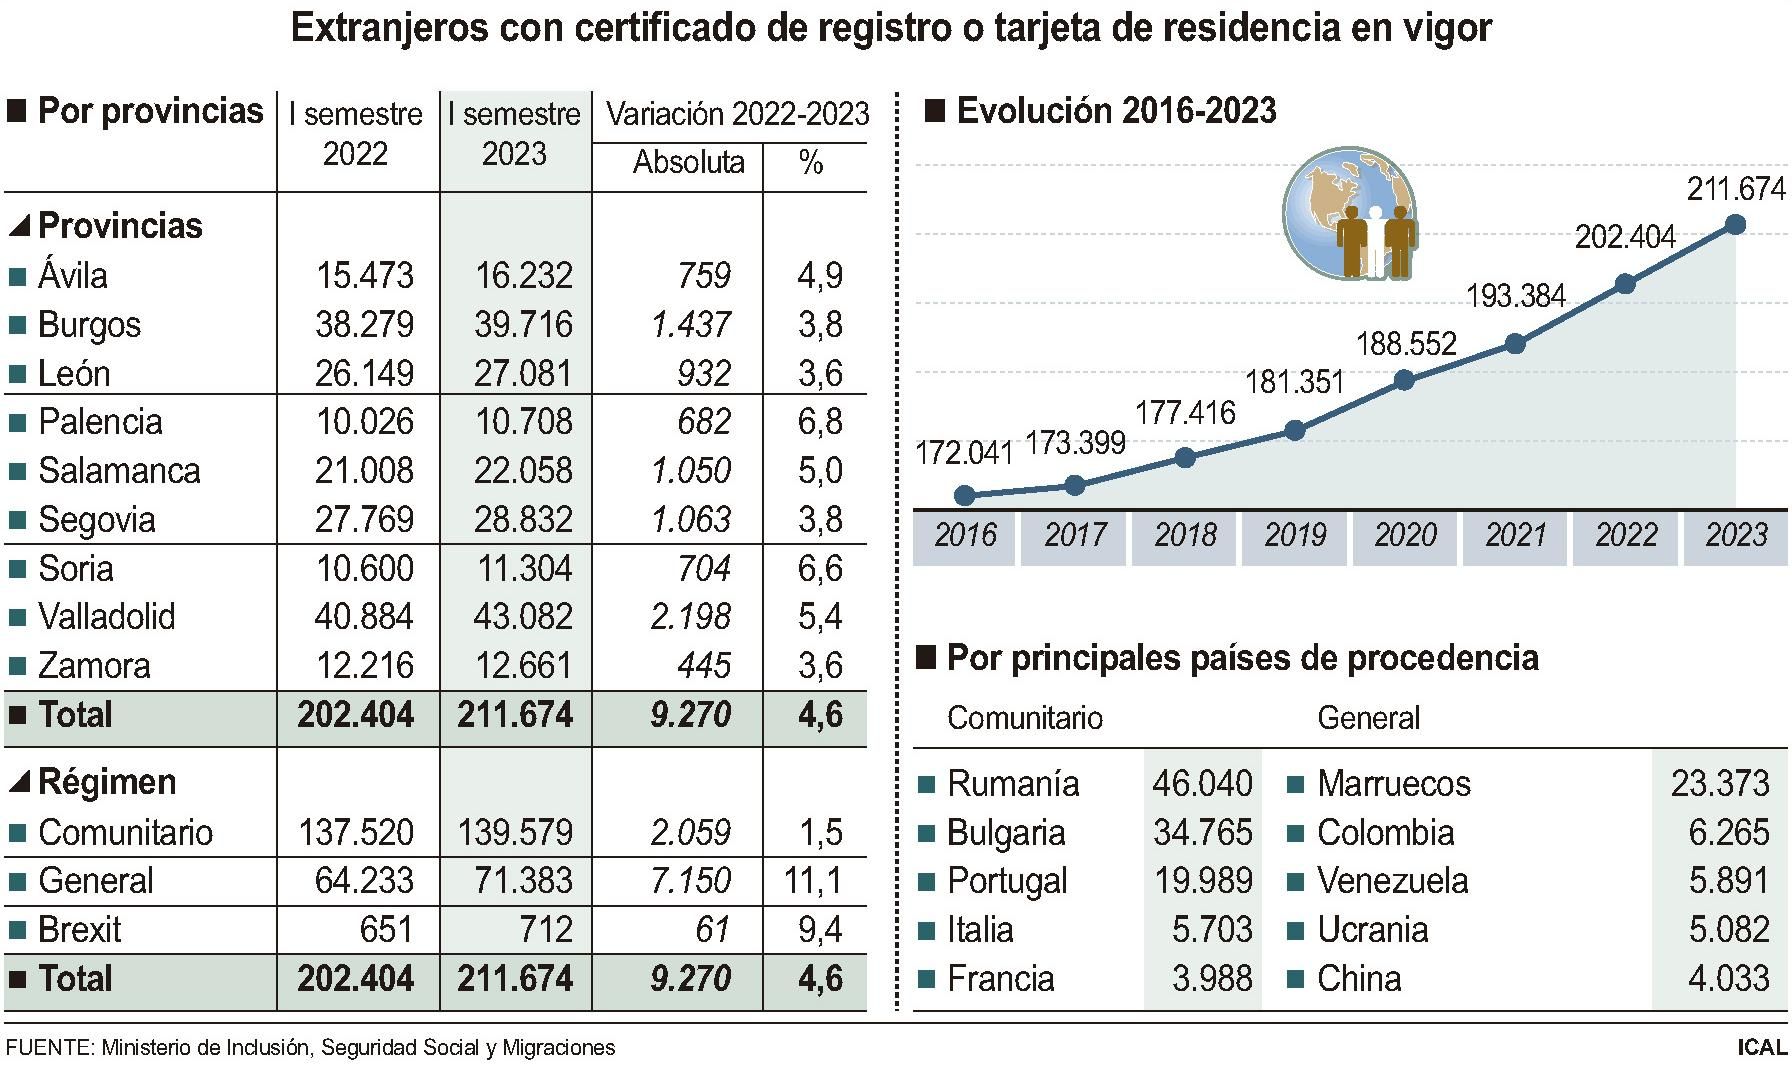 Extranjeros con certificado de registro o tarjeta de residencia en vigor